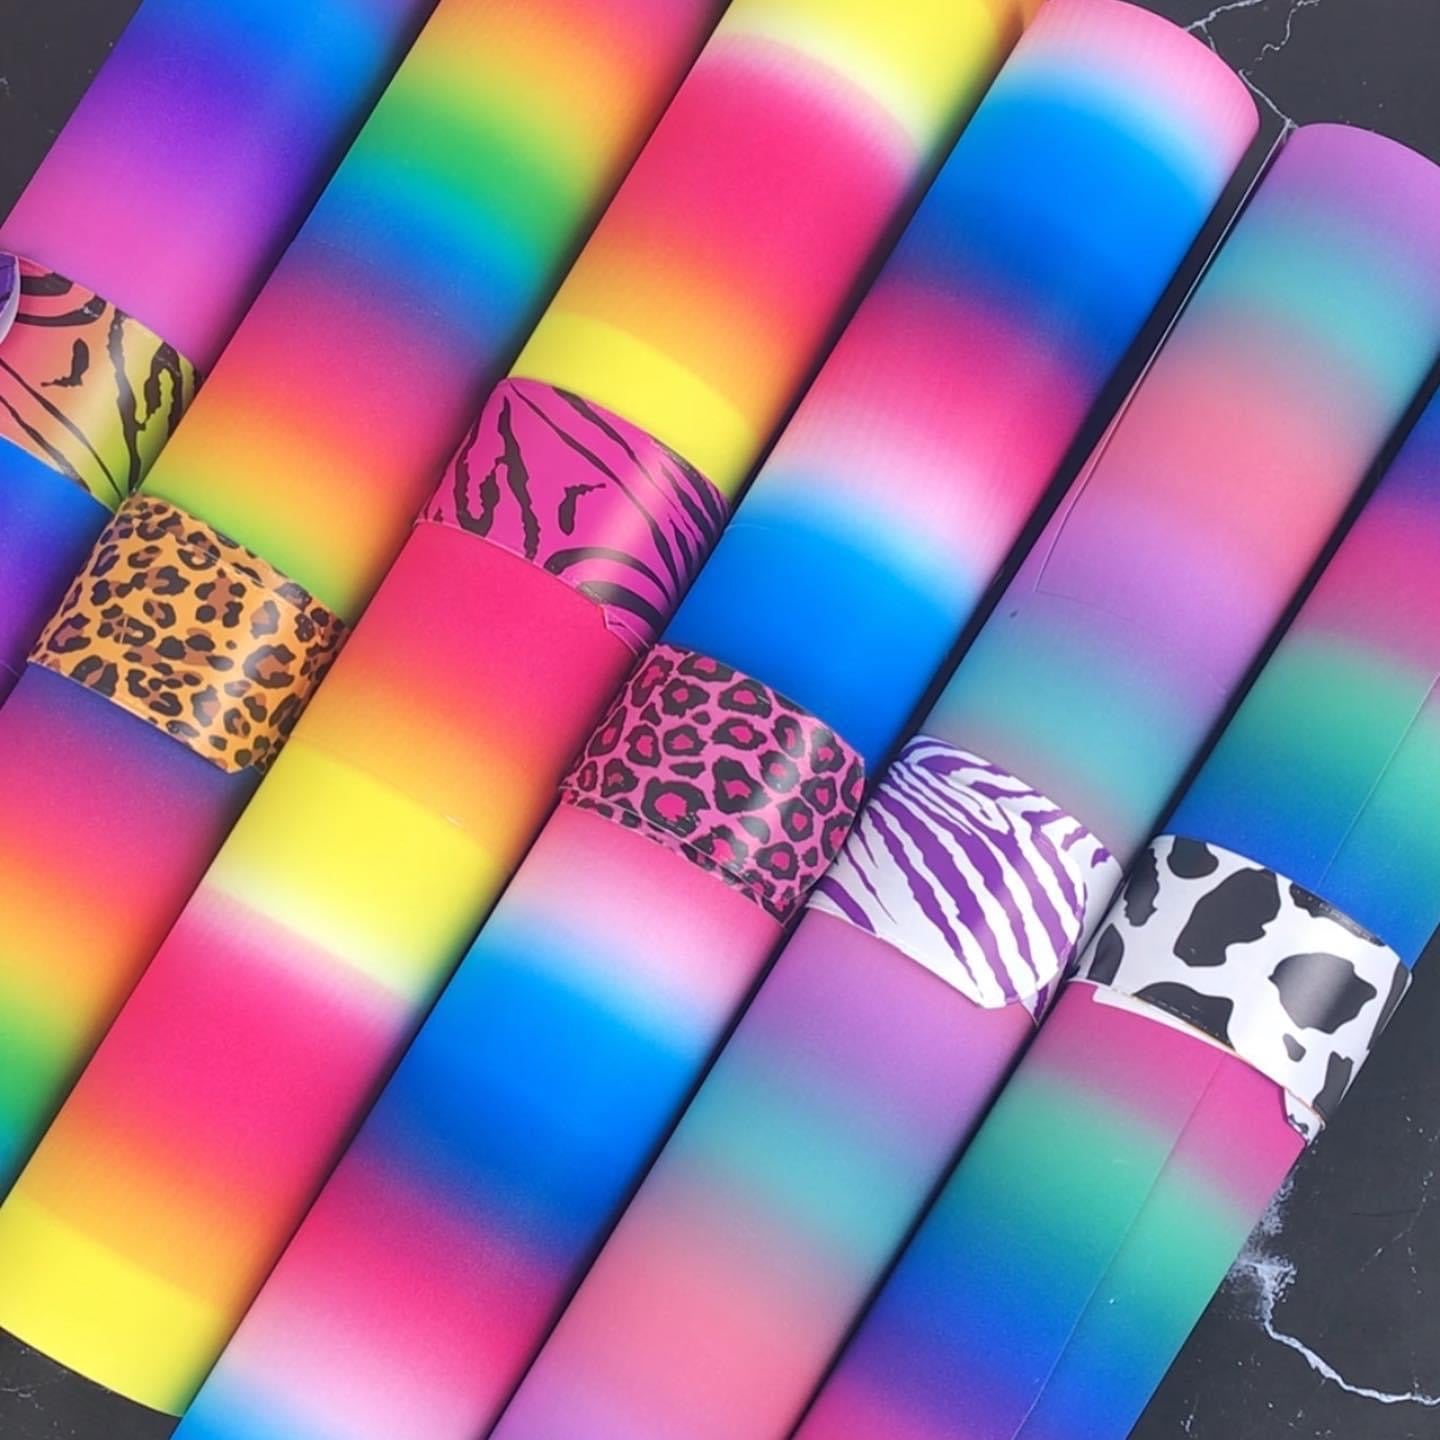 TECKWRAP Rainbow Stripes Adhesive Vinyl - 12x12